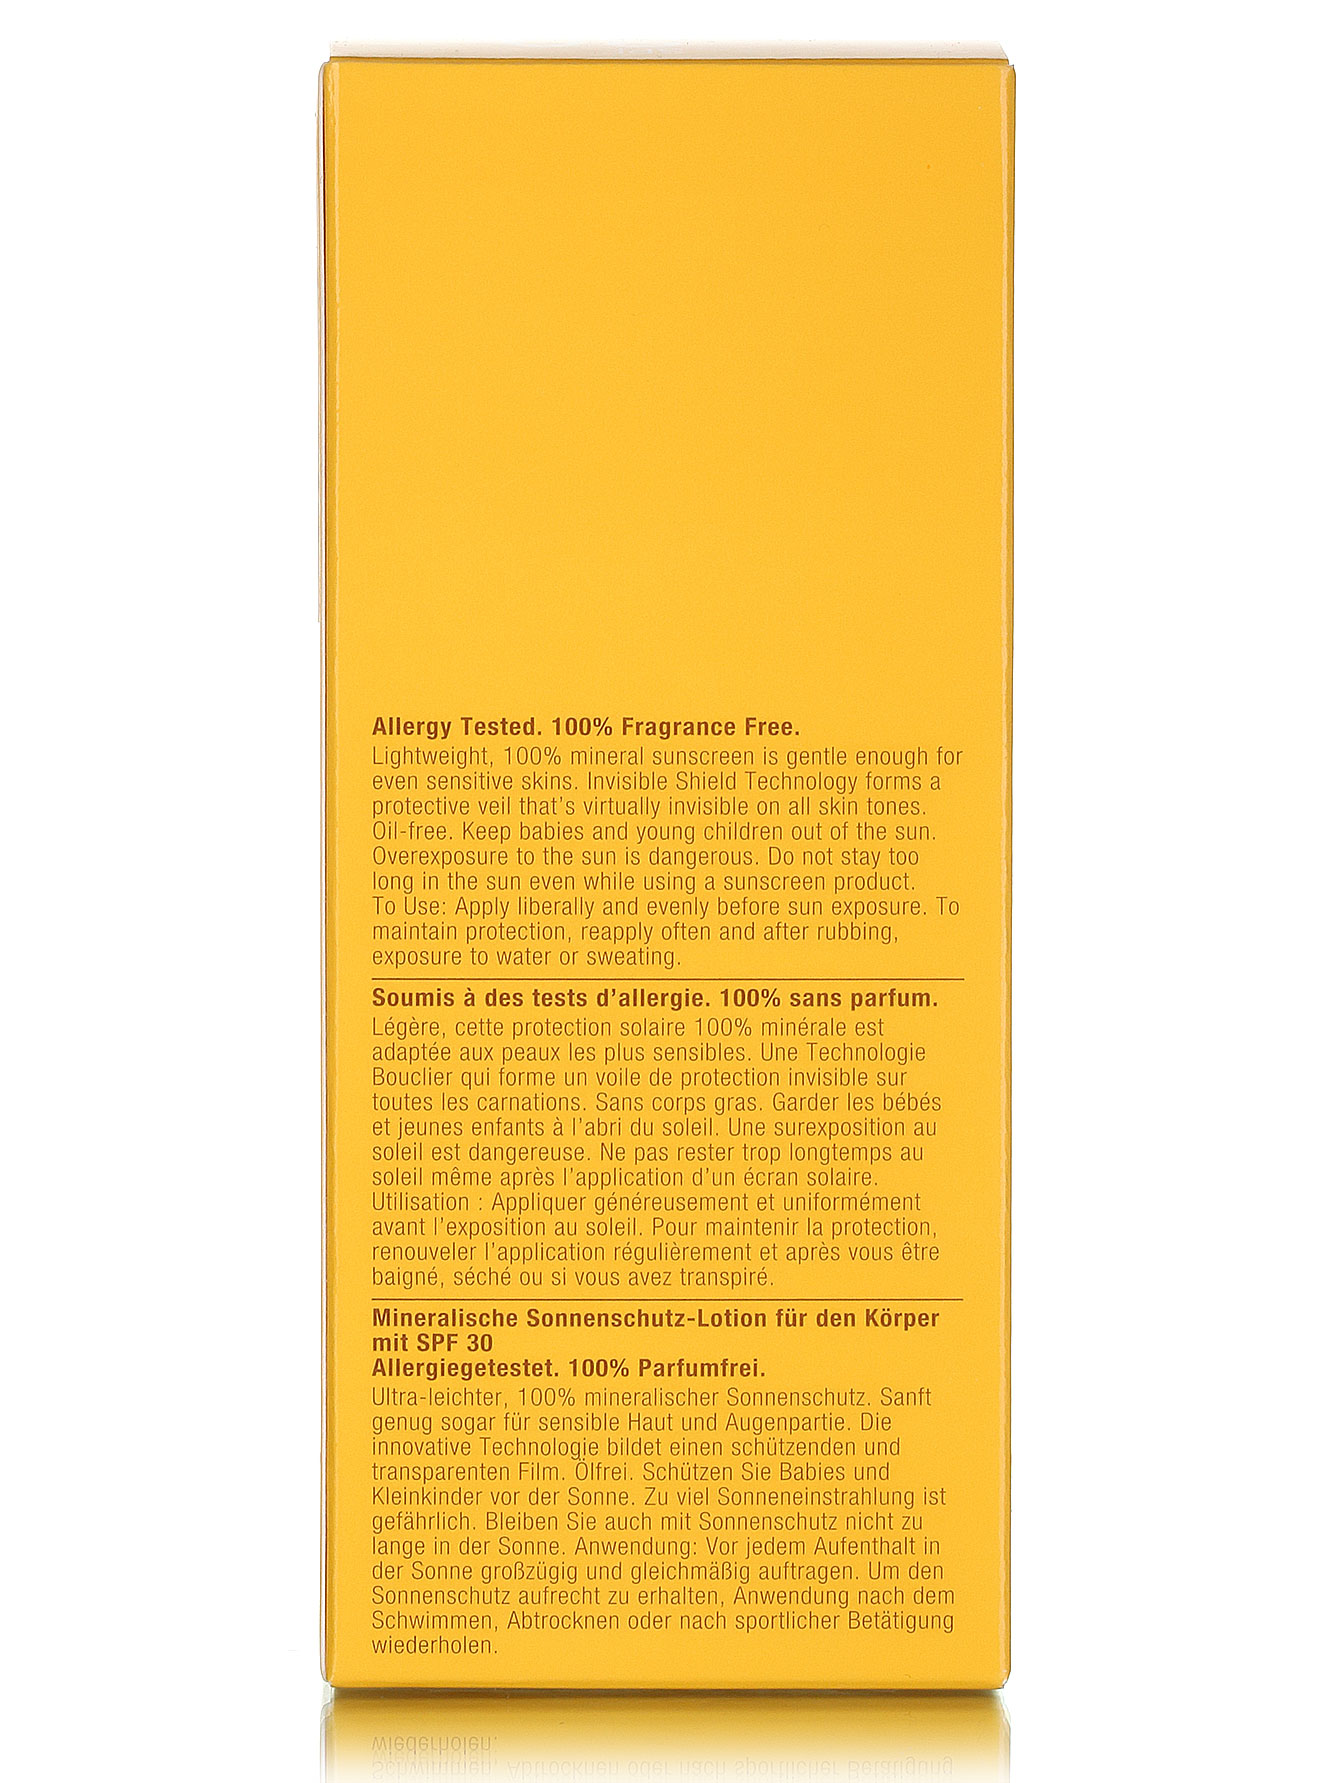  Солнцезащитный лосьон для тела - Mineral Sunscreen, 125ml - Модель Верх-Низ